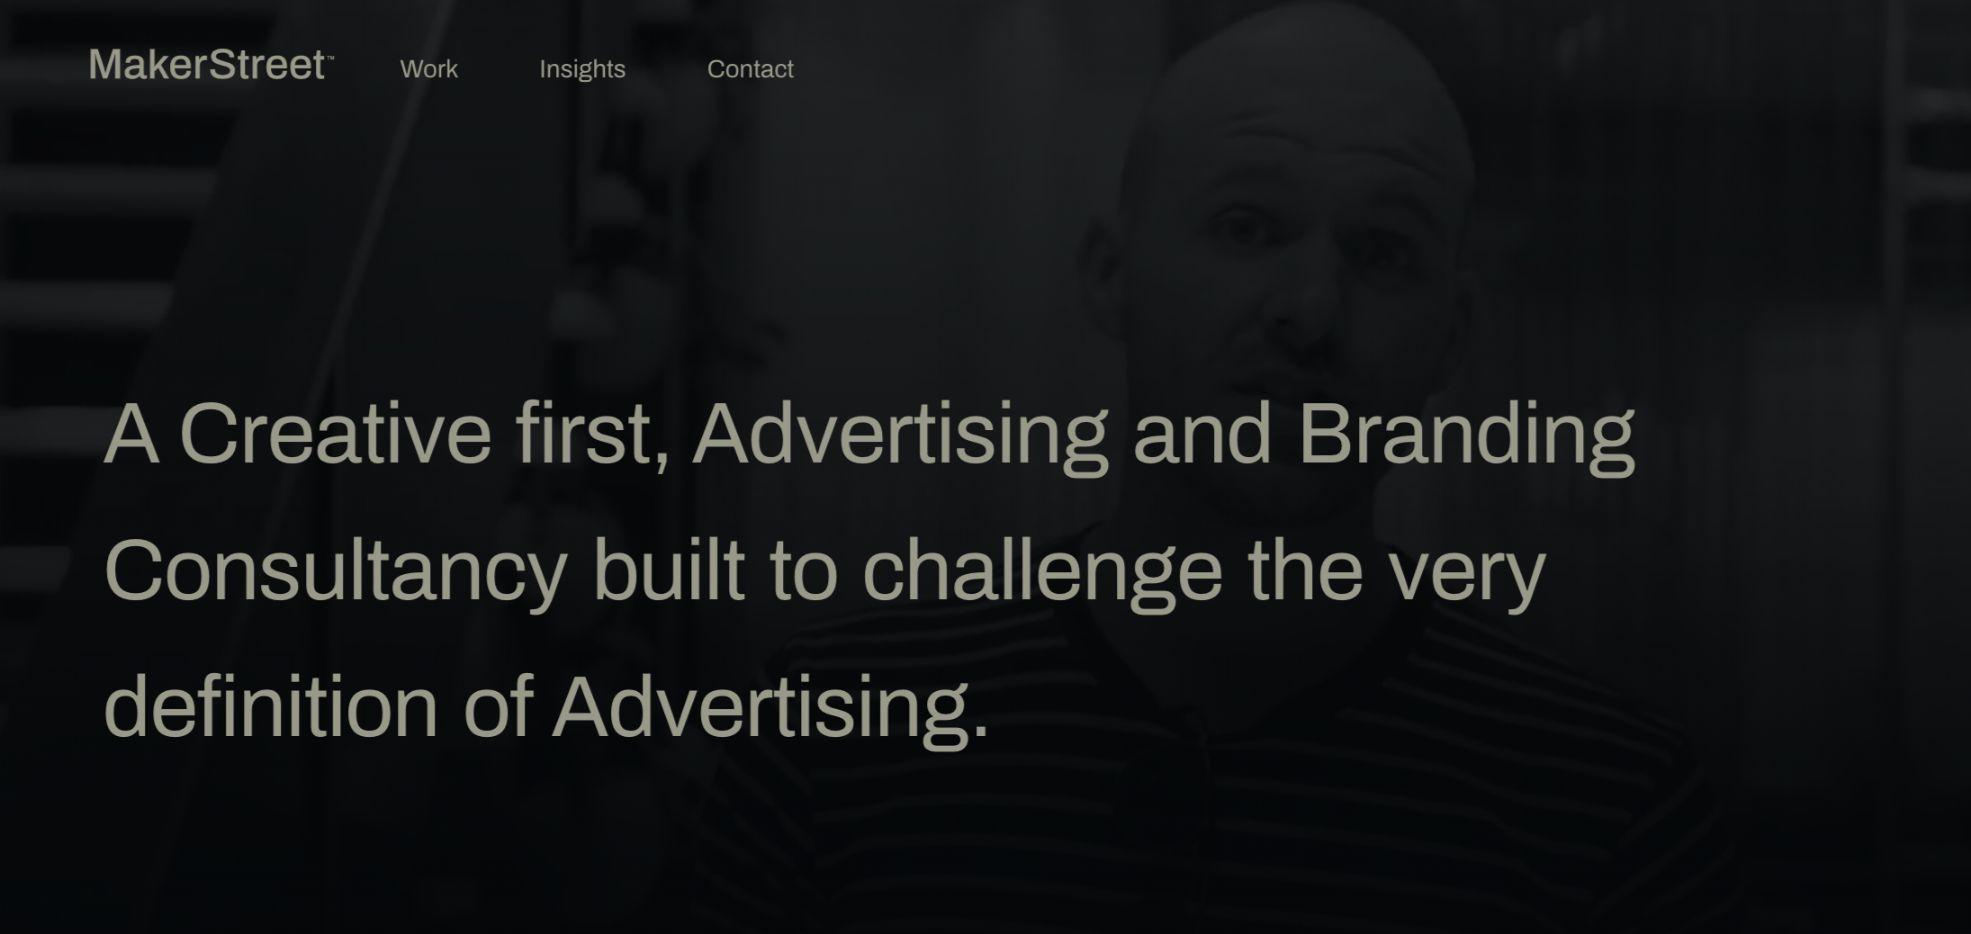 MakerStreet - Australian advertising agency